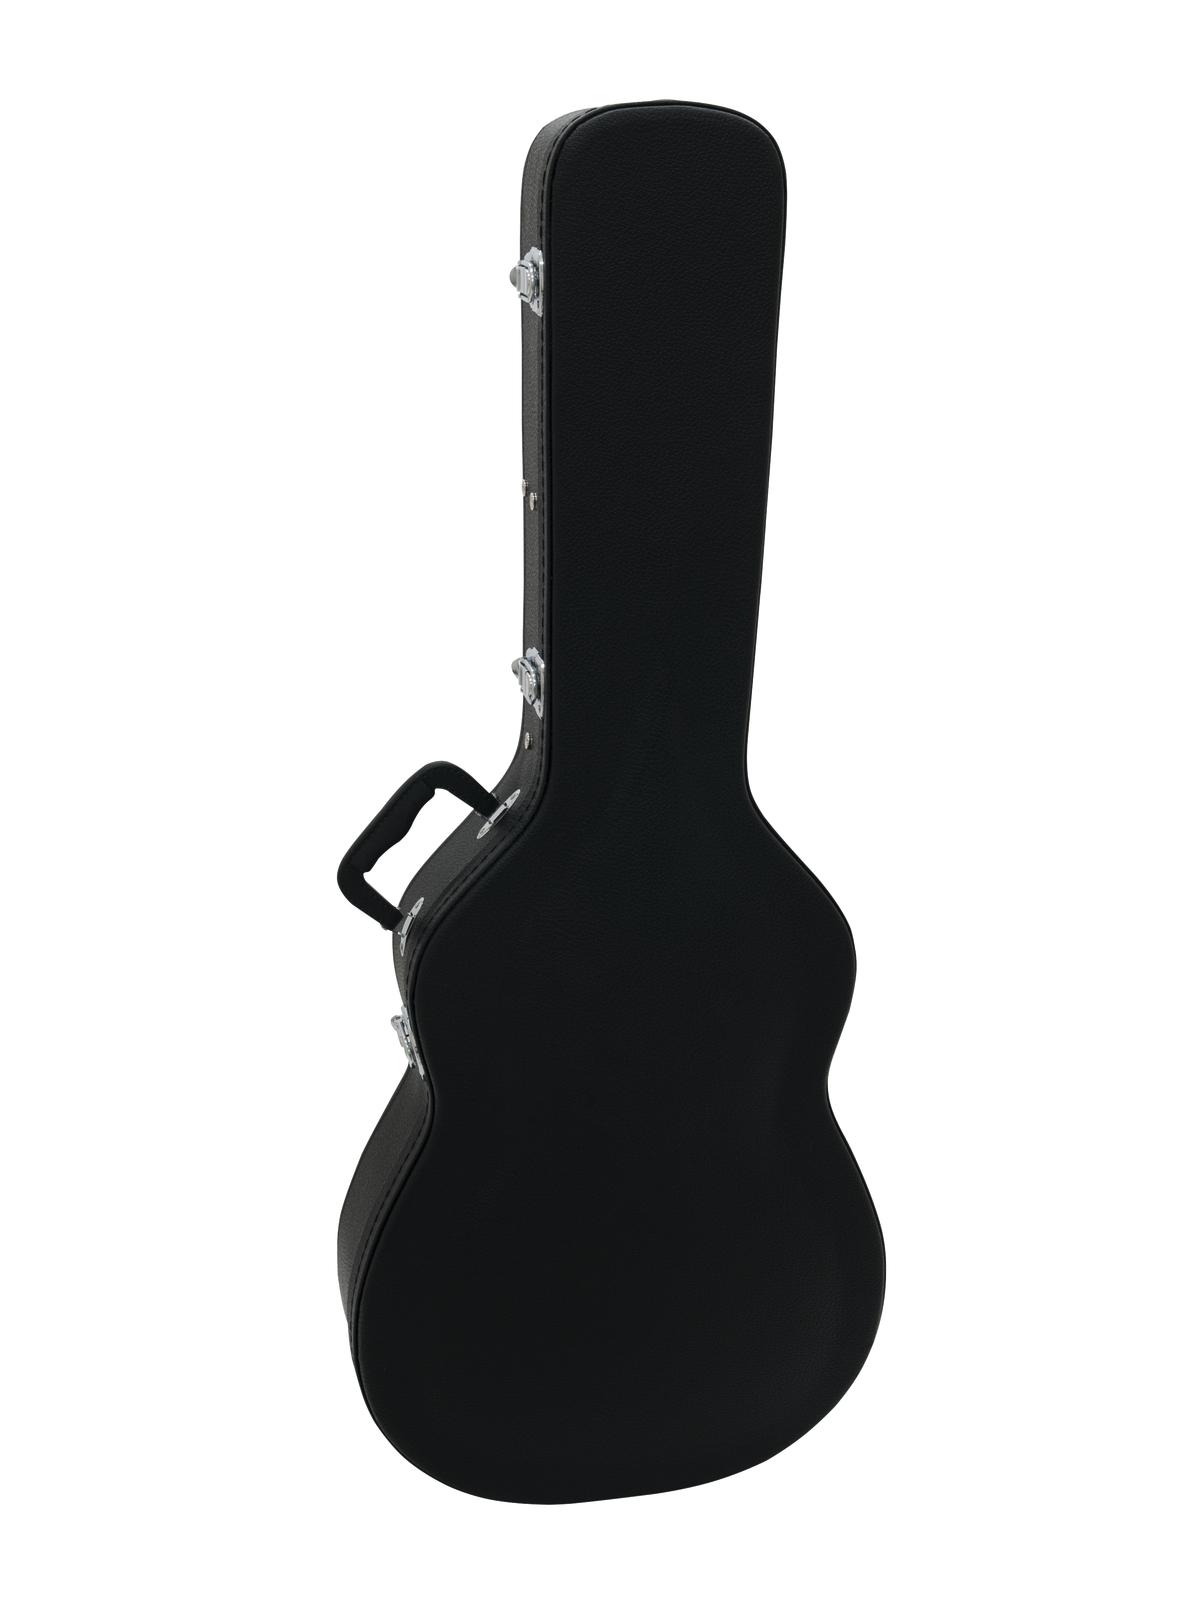 Køb ABS Hardcase / Kuffert til Klassisk-guitar - Sort - Pris 769.00 kr.